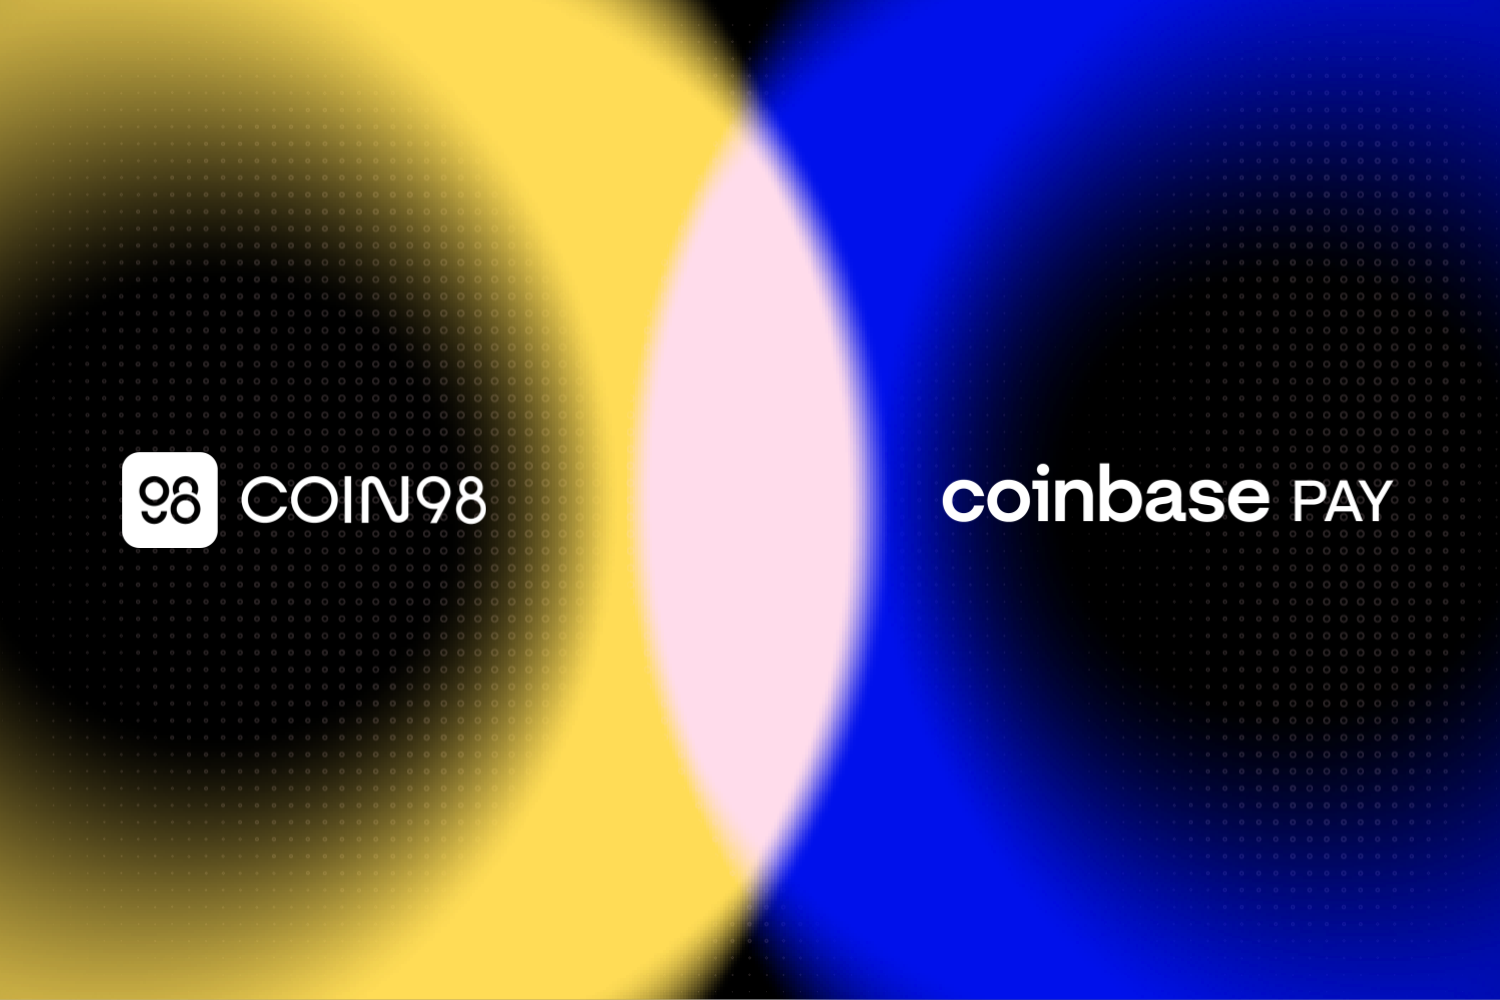 Coin98 integrates Coinbase Pay